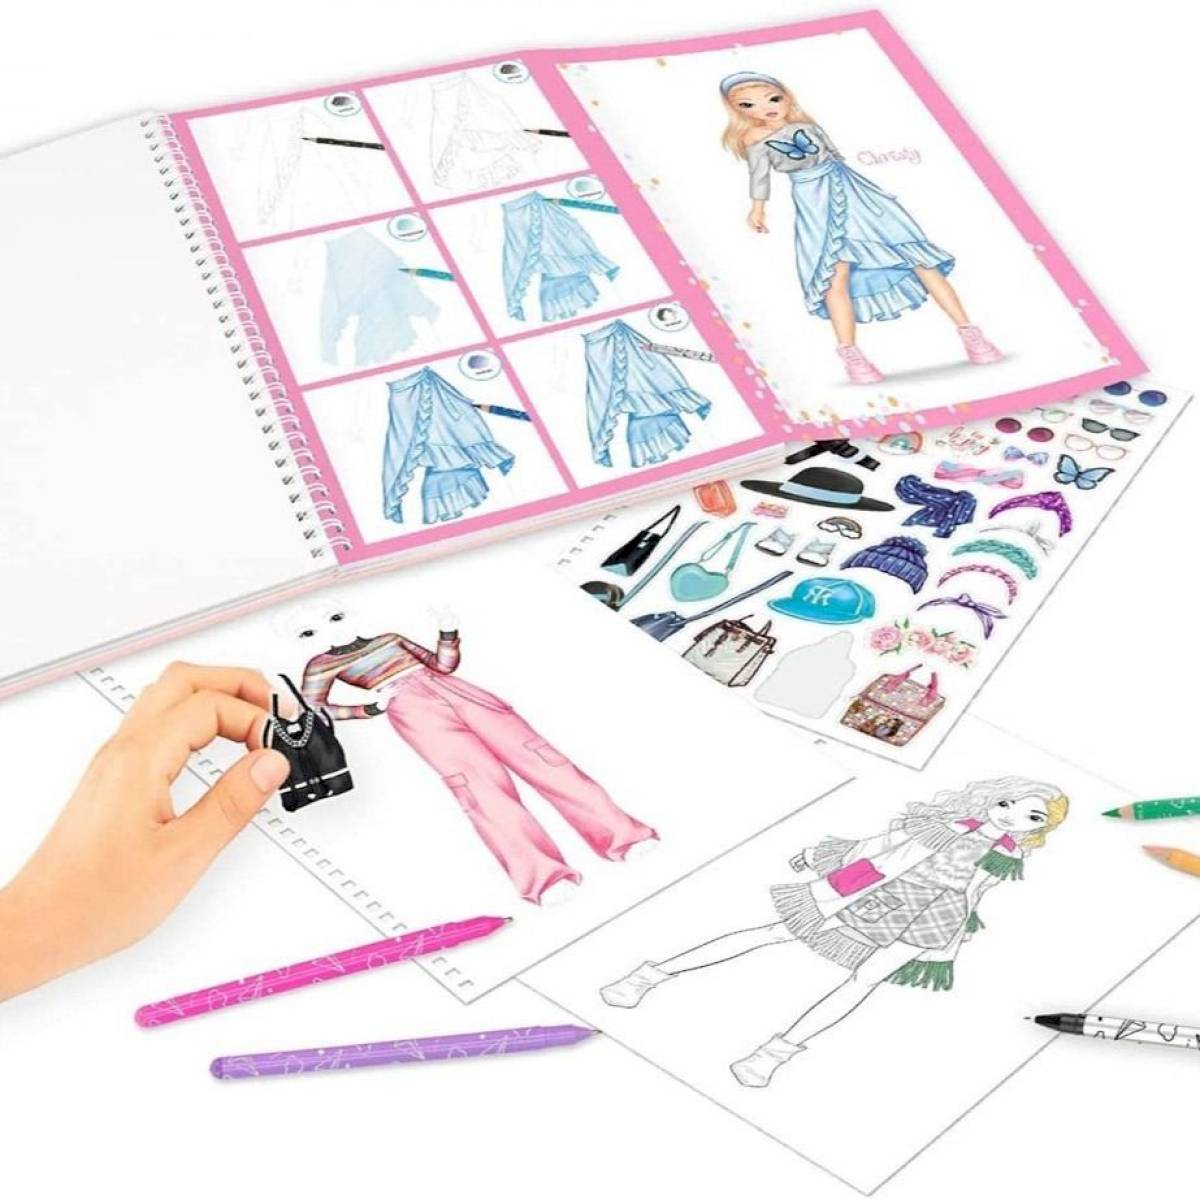 Album coloriage et création TOP Model modèle Colour and Design book